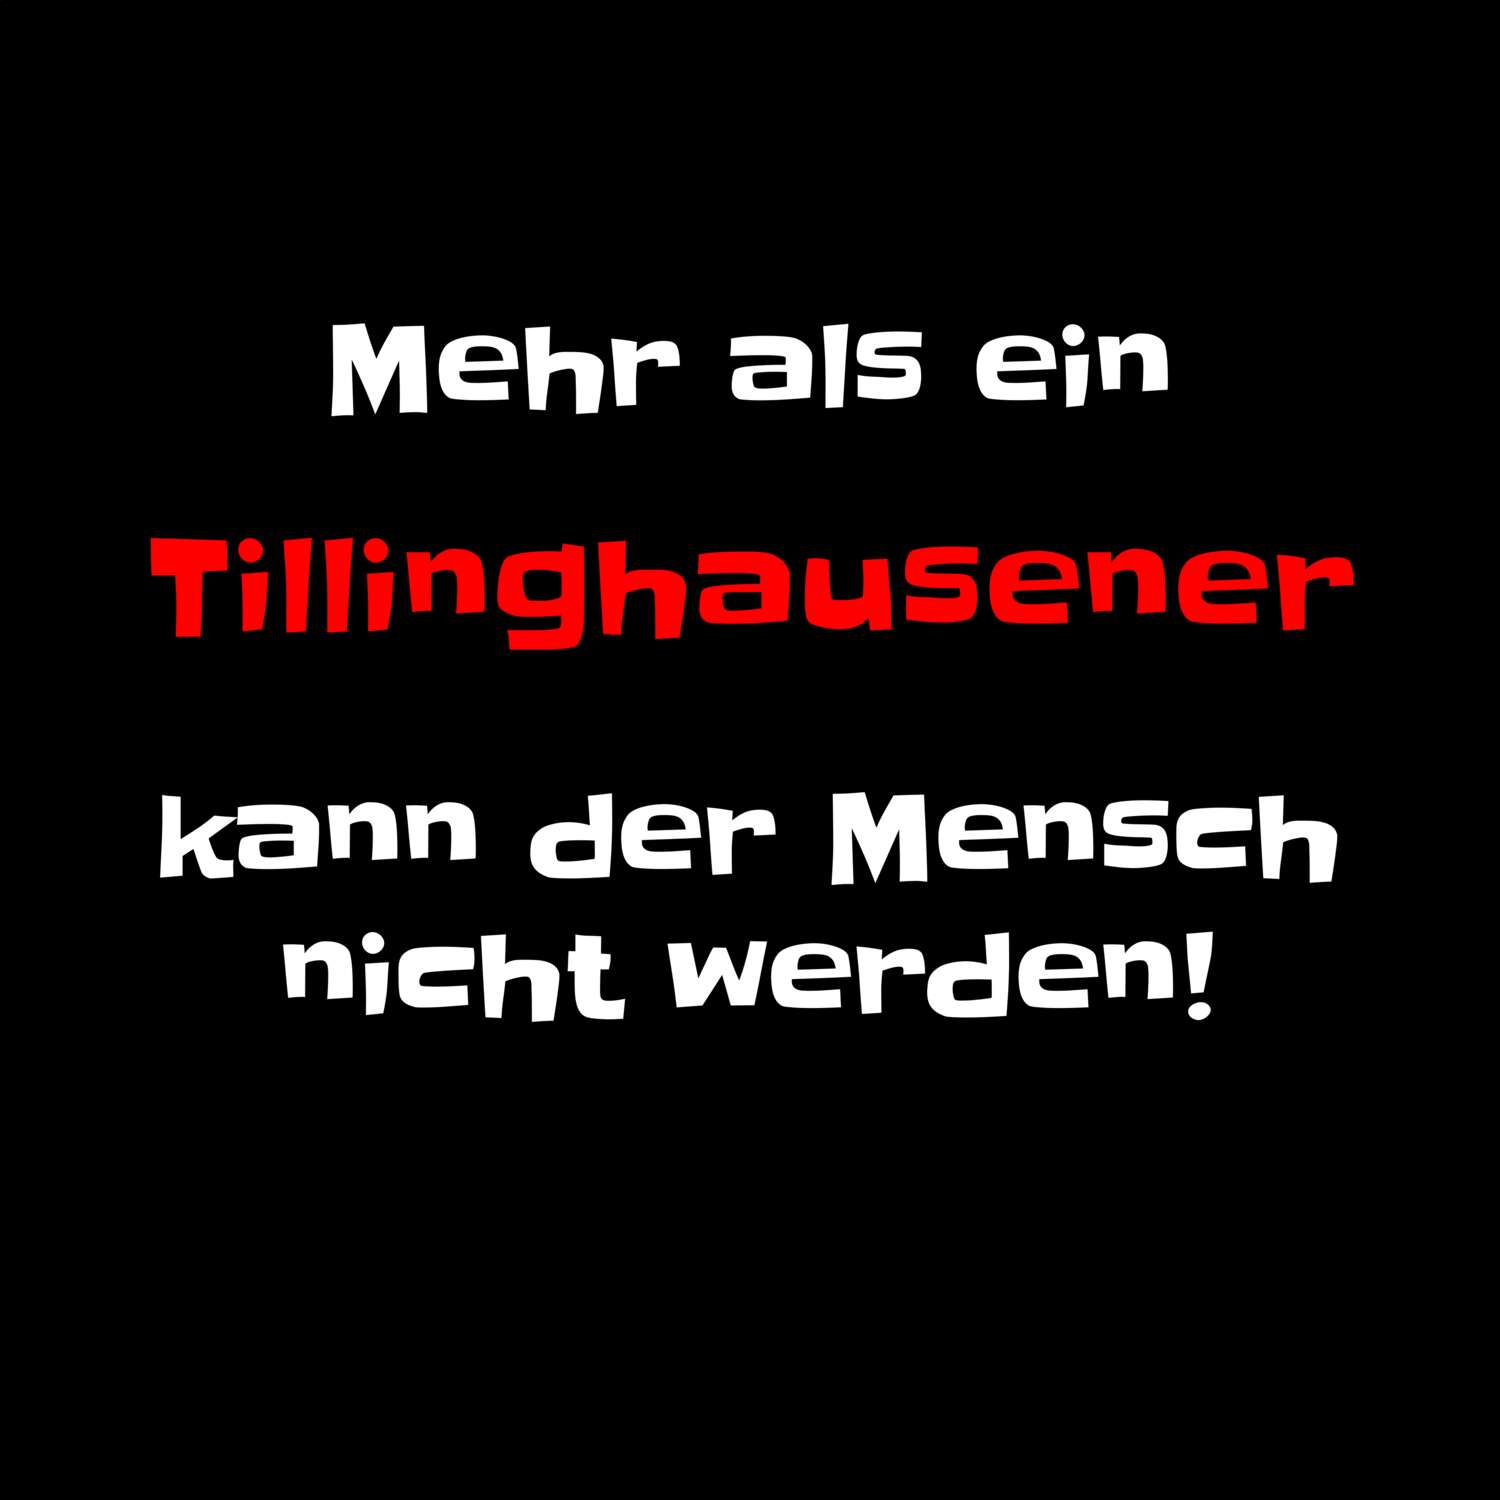 Tillinghausen T-Shirt »Mehr als ein«